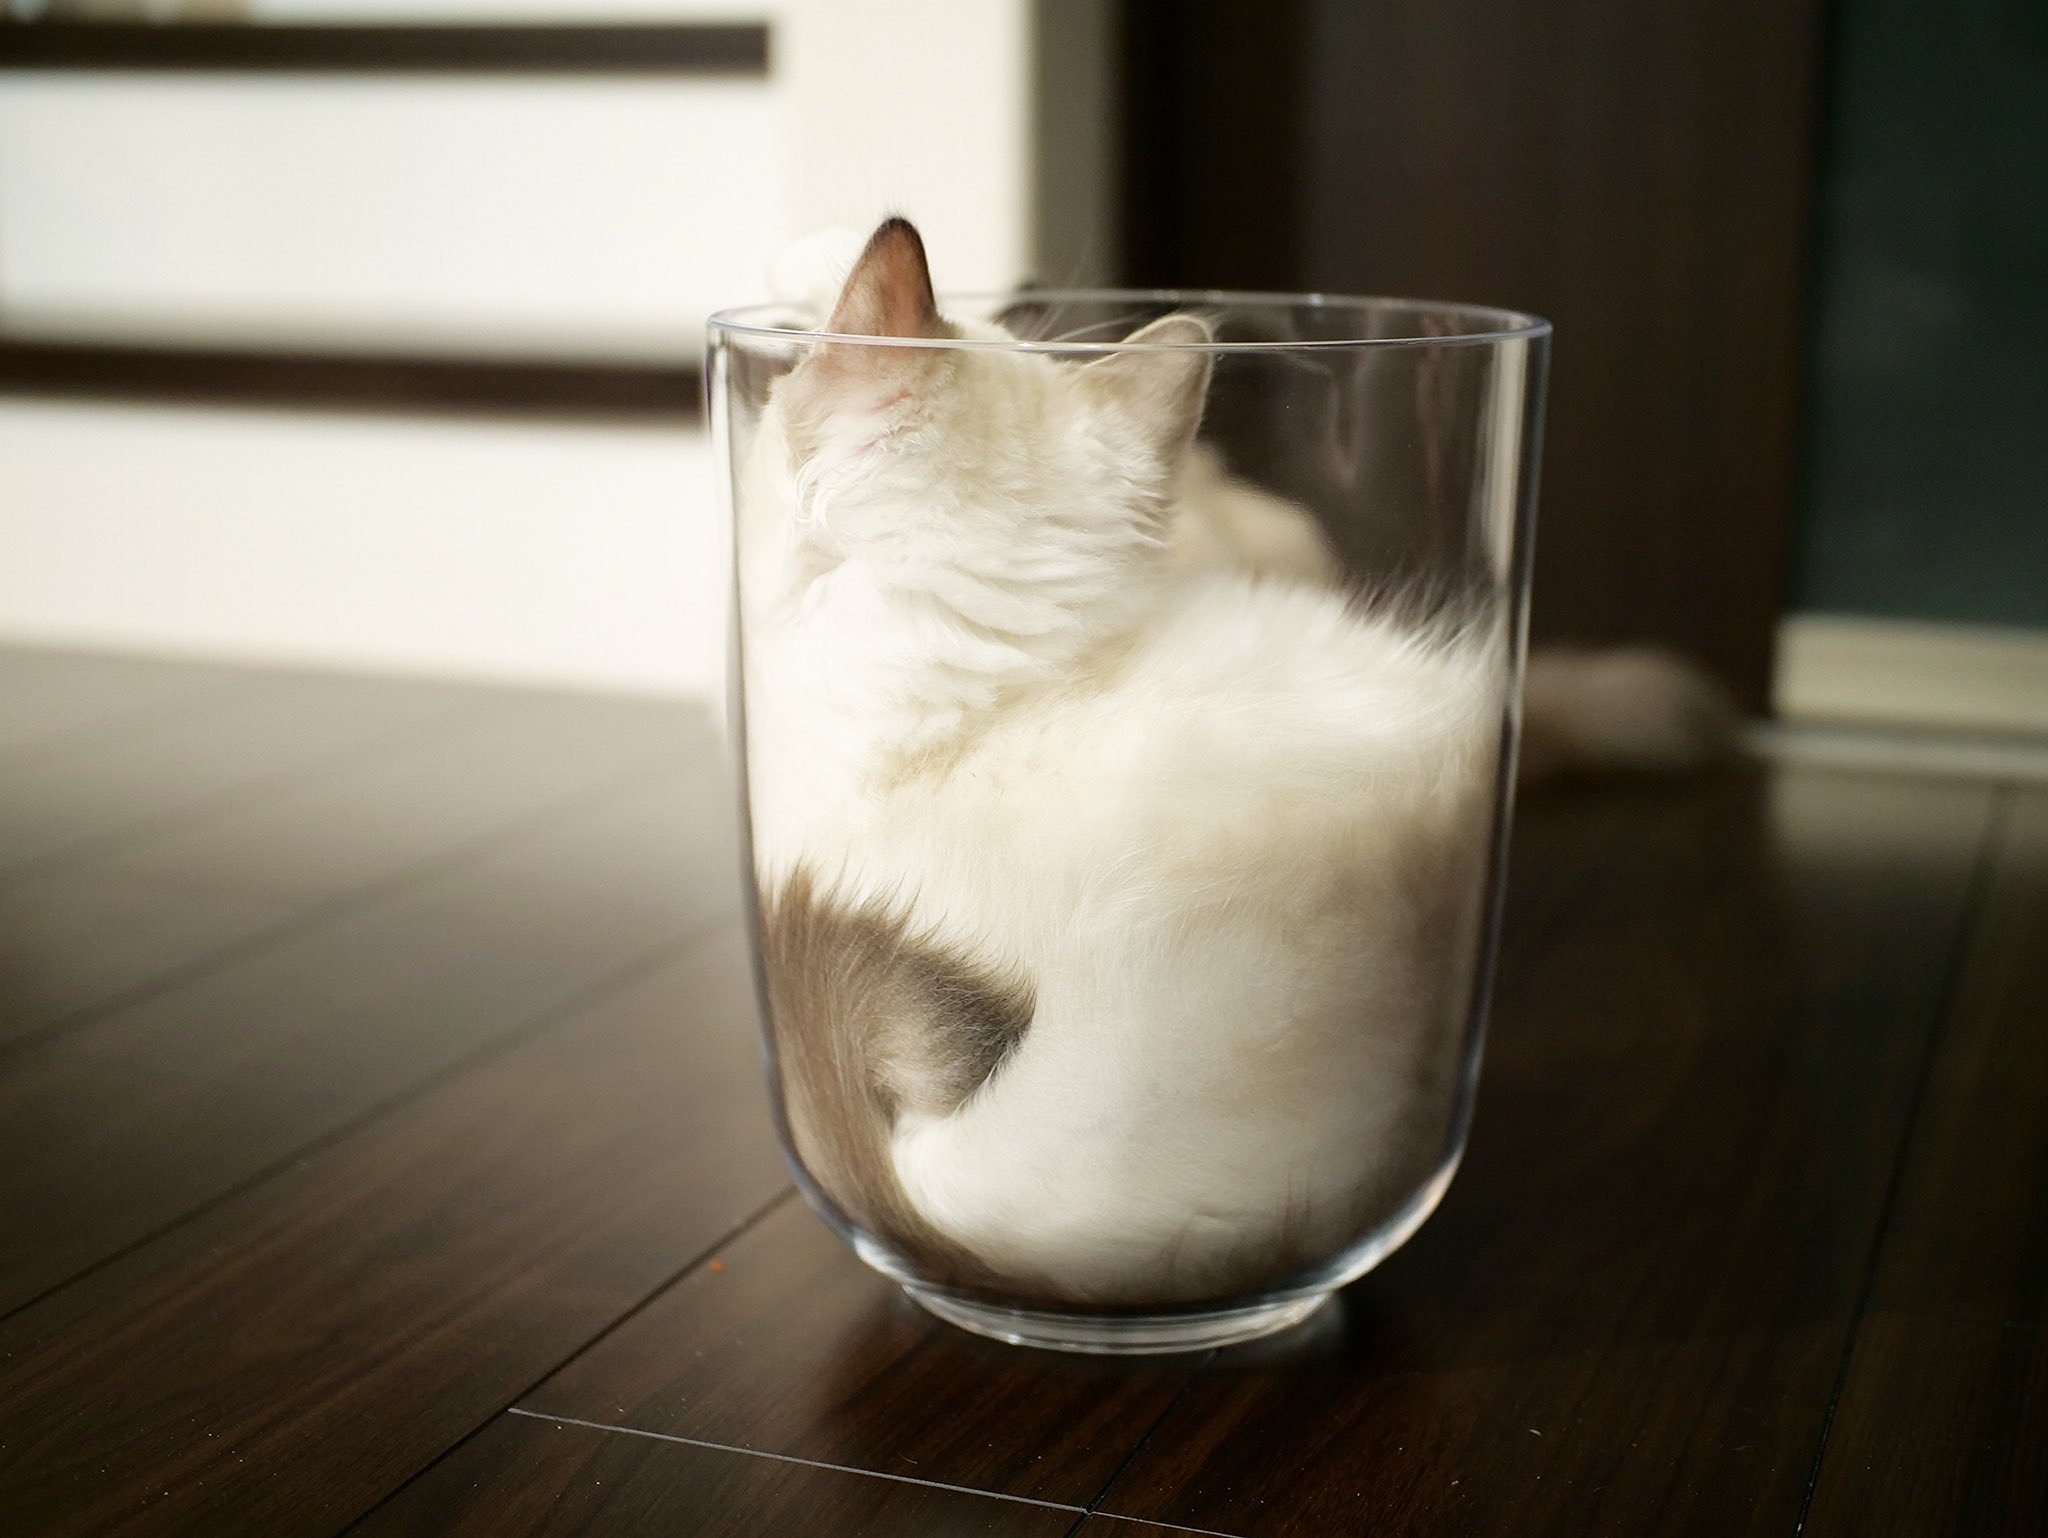 カフェラテの出来上がり?!猫ちゃんが容器に入る可愛いすぎる姿に「猫って液体だったの⁉」とコメ続々！